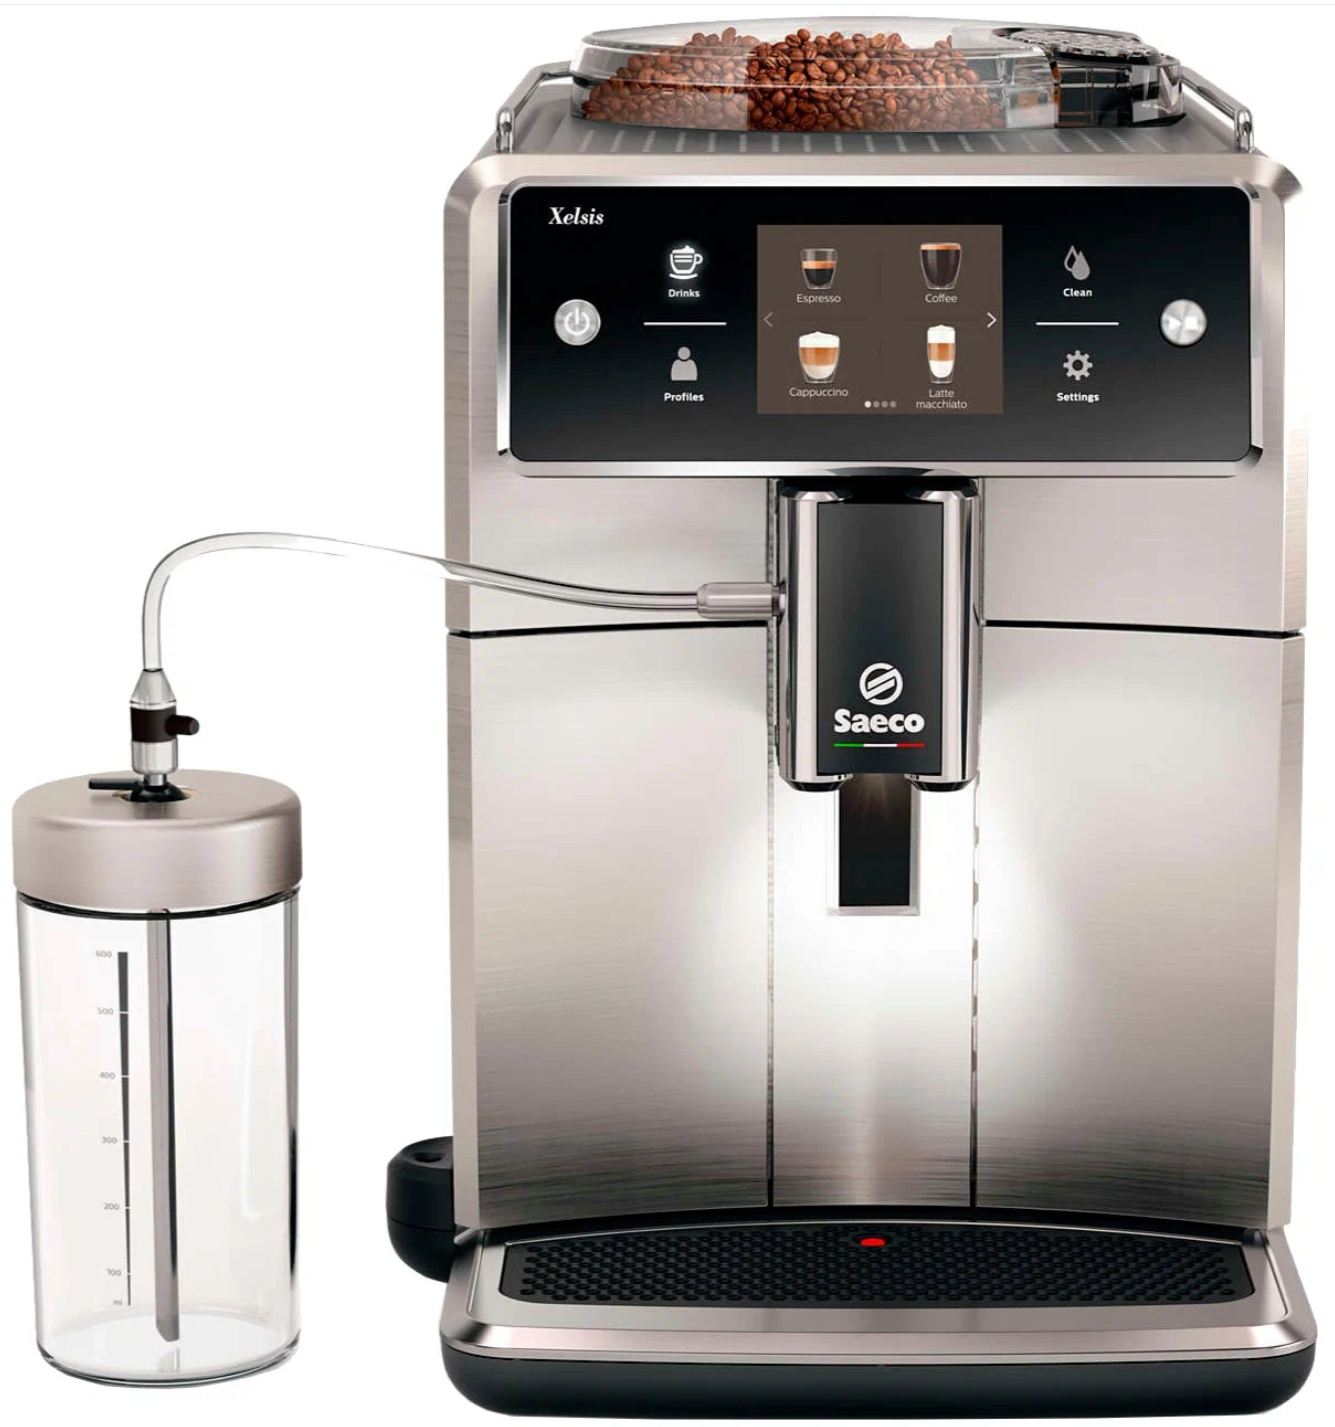 Автоматическая кофемашина Saeco "SM7685" серебристого цвета